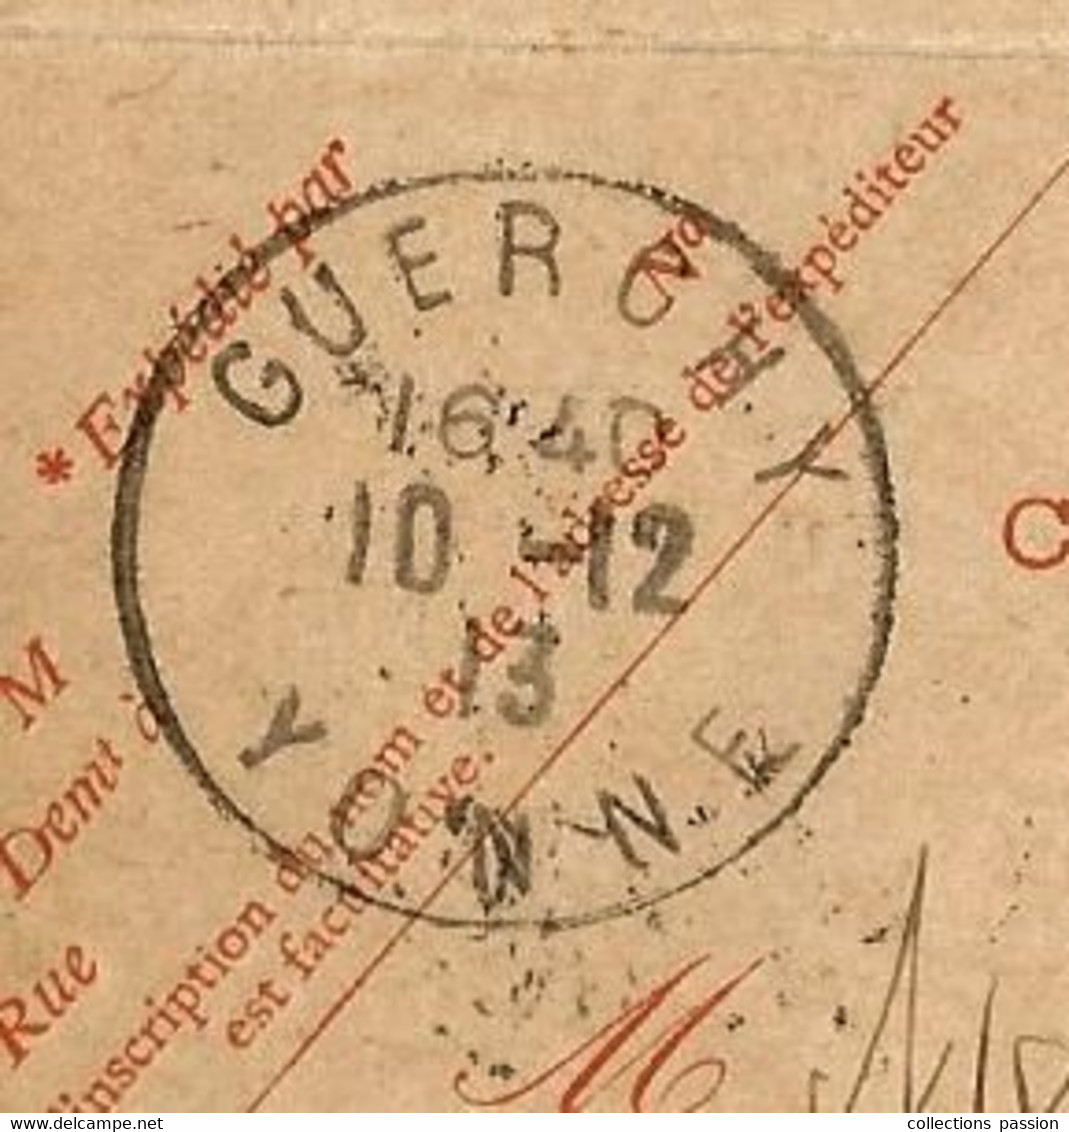 Entier Postal Sur Carte Lettre,  GUERCHY,  Pour AUXERRE,  YONNE,  1913,  3 Scans - Cartes-lettres